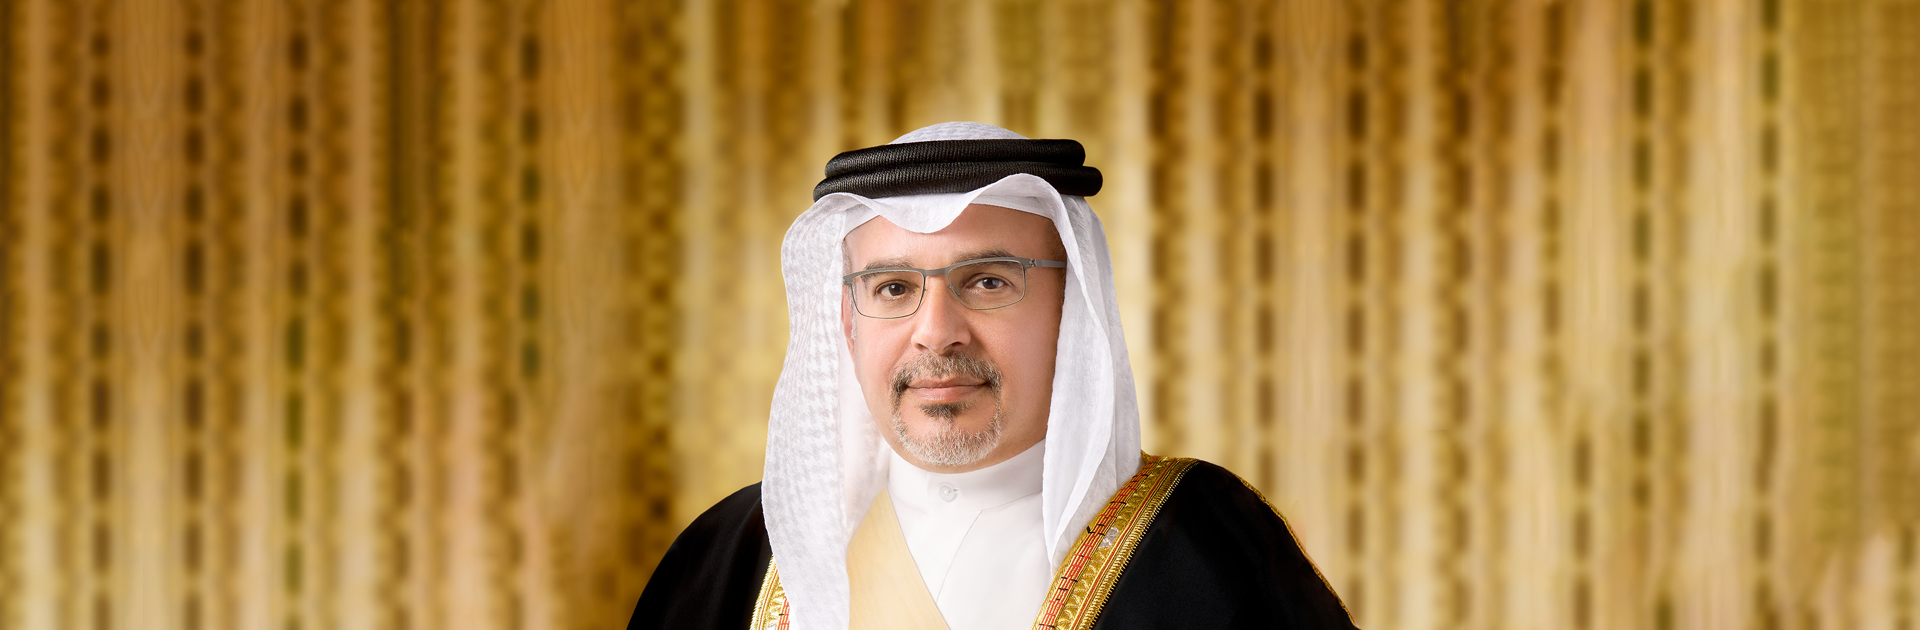 سمو ولي العهد رئيس مجلس الوزراء يصدر قرارًا بتعيين مدير في هيئة البحرين للثقافة والآثار